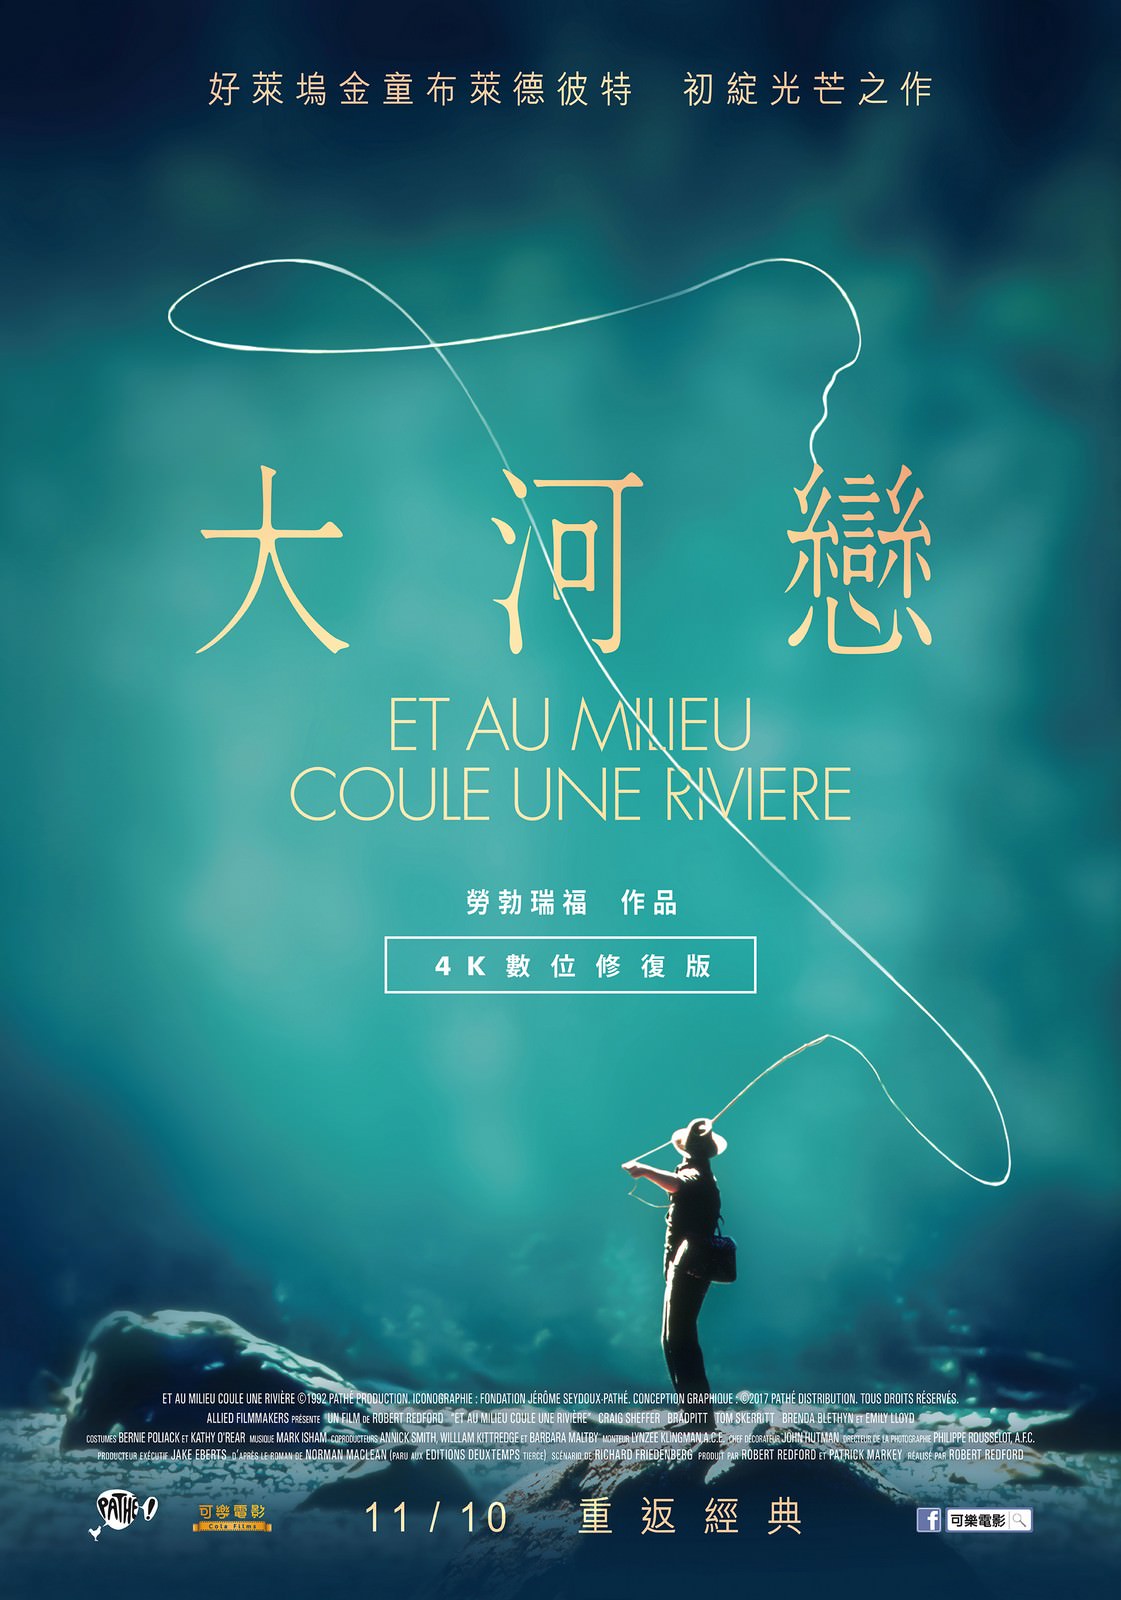 Movie, A River Runs Through It(美國, 1992年) / 大河戀(台灣) / 川流歲月(香港), 電影海報, 台灣